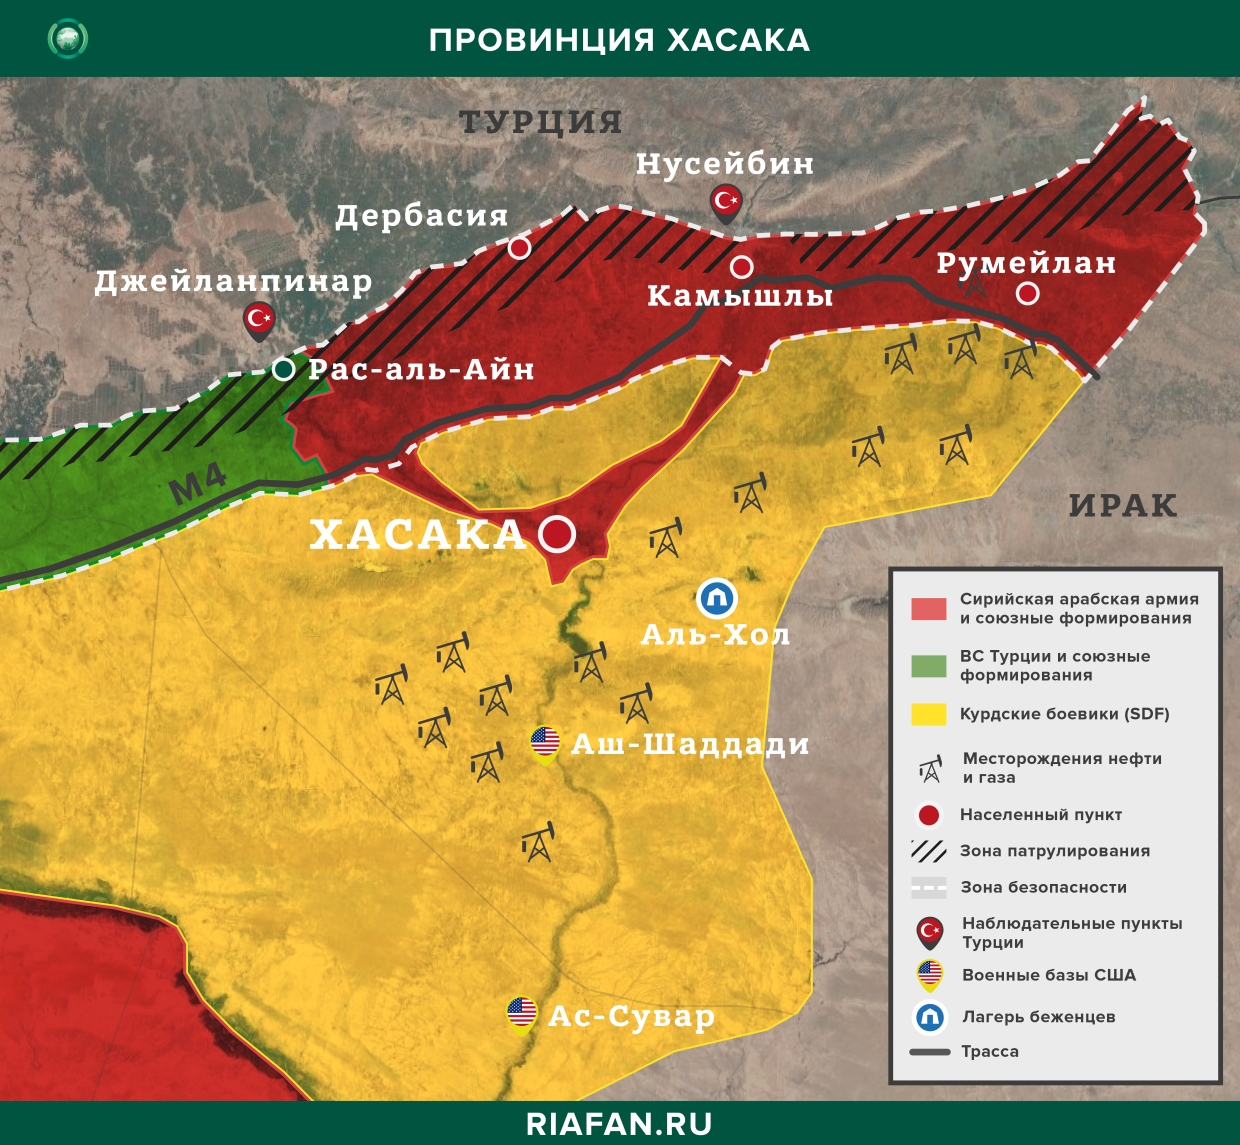 Сирия итоги за сутки на 21 июля 06.00: рейды курдских боевиков в Дейр-эз-Зоре, в Алеппо нейтрализованы 3 террориста ИГ